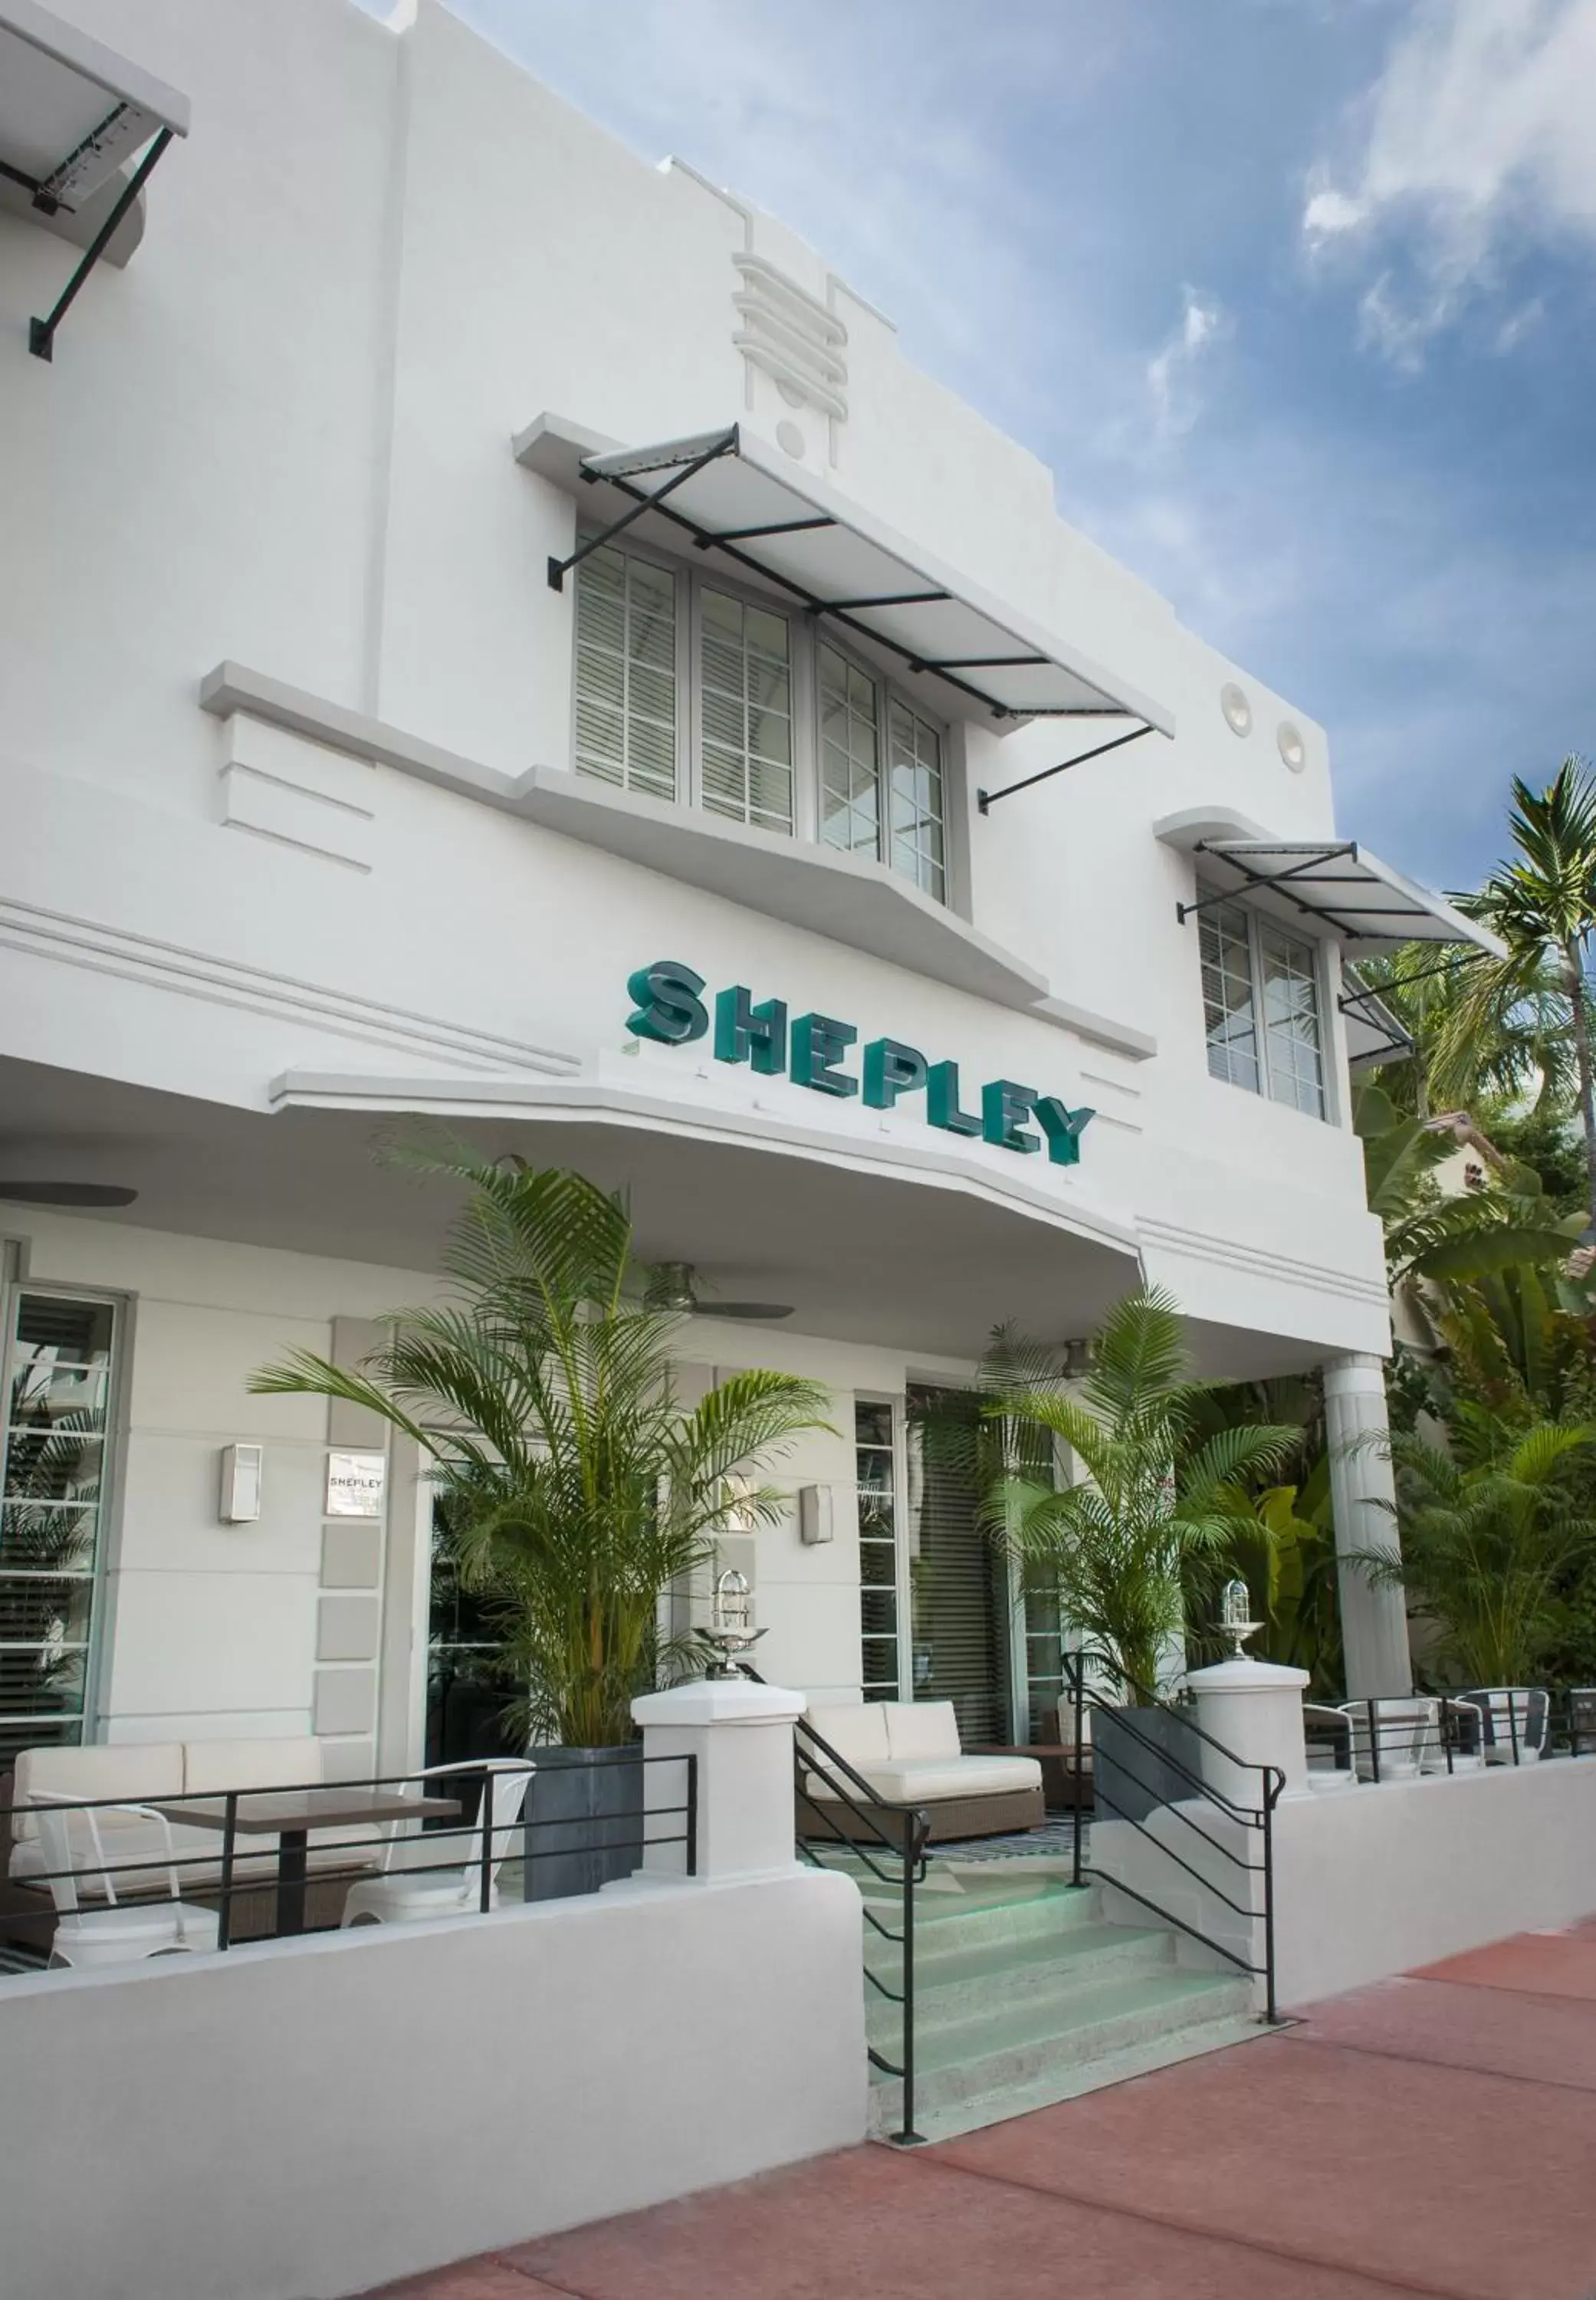 Facade/entrance, Property Building in Shepley South Beach Hotel